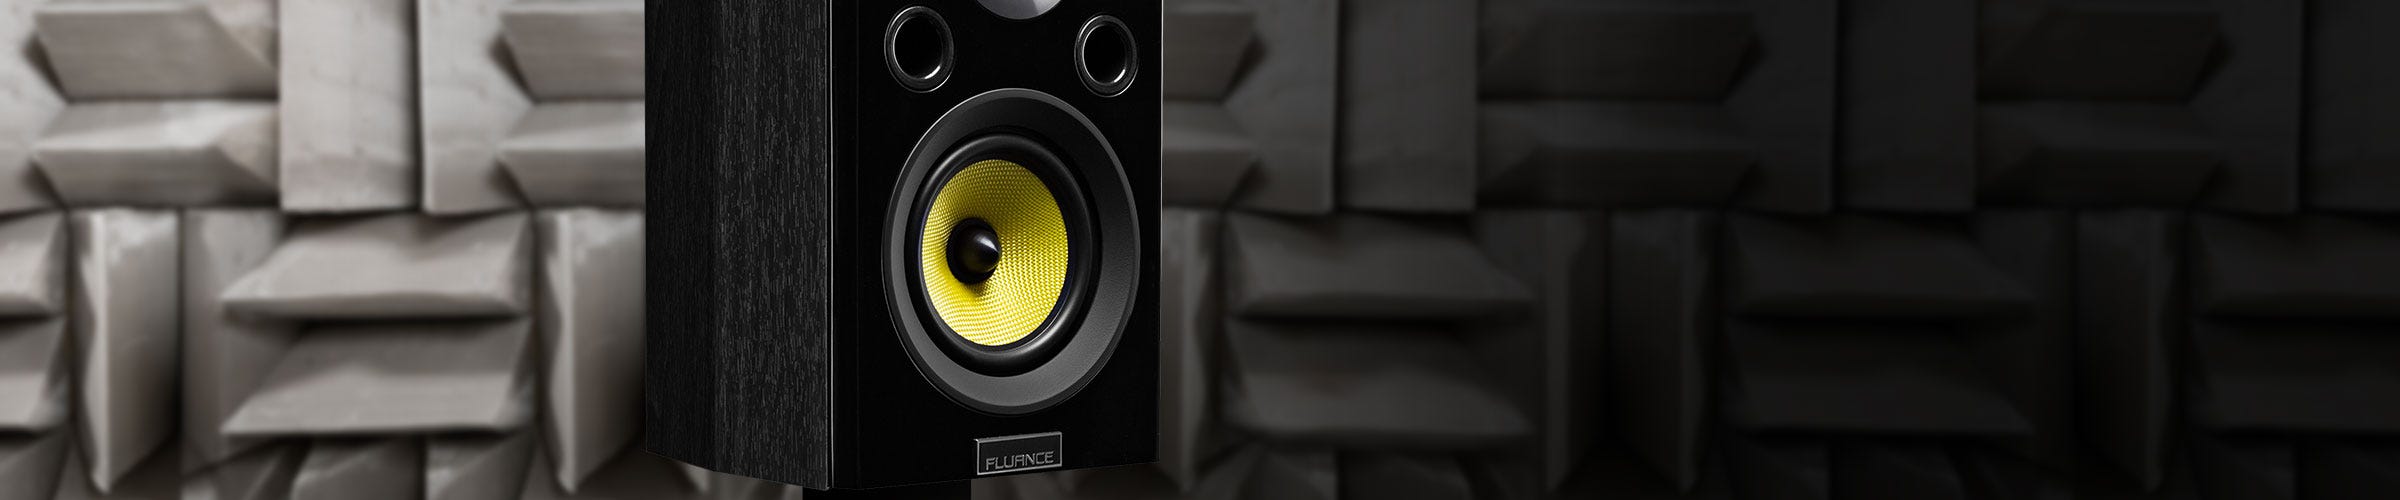 Fluance signature series surround sound speakers midrange